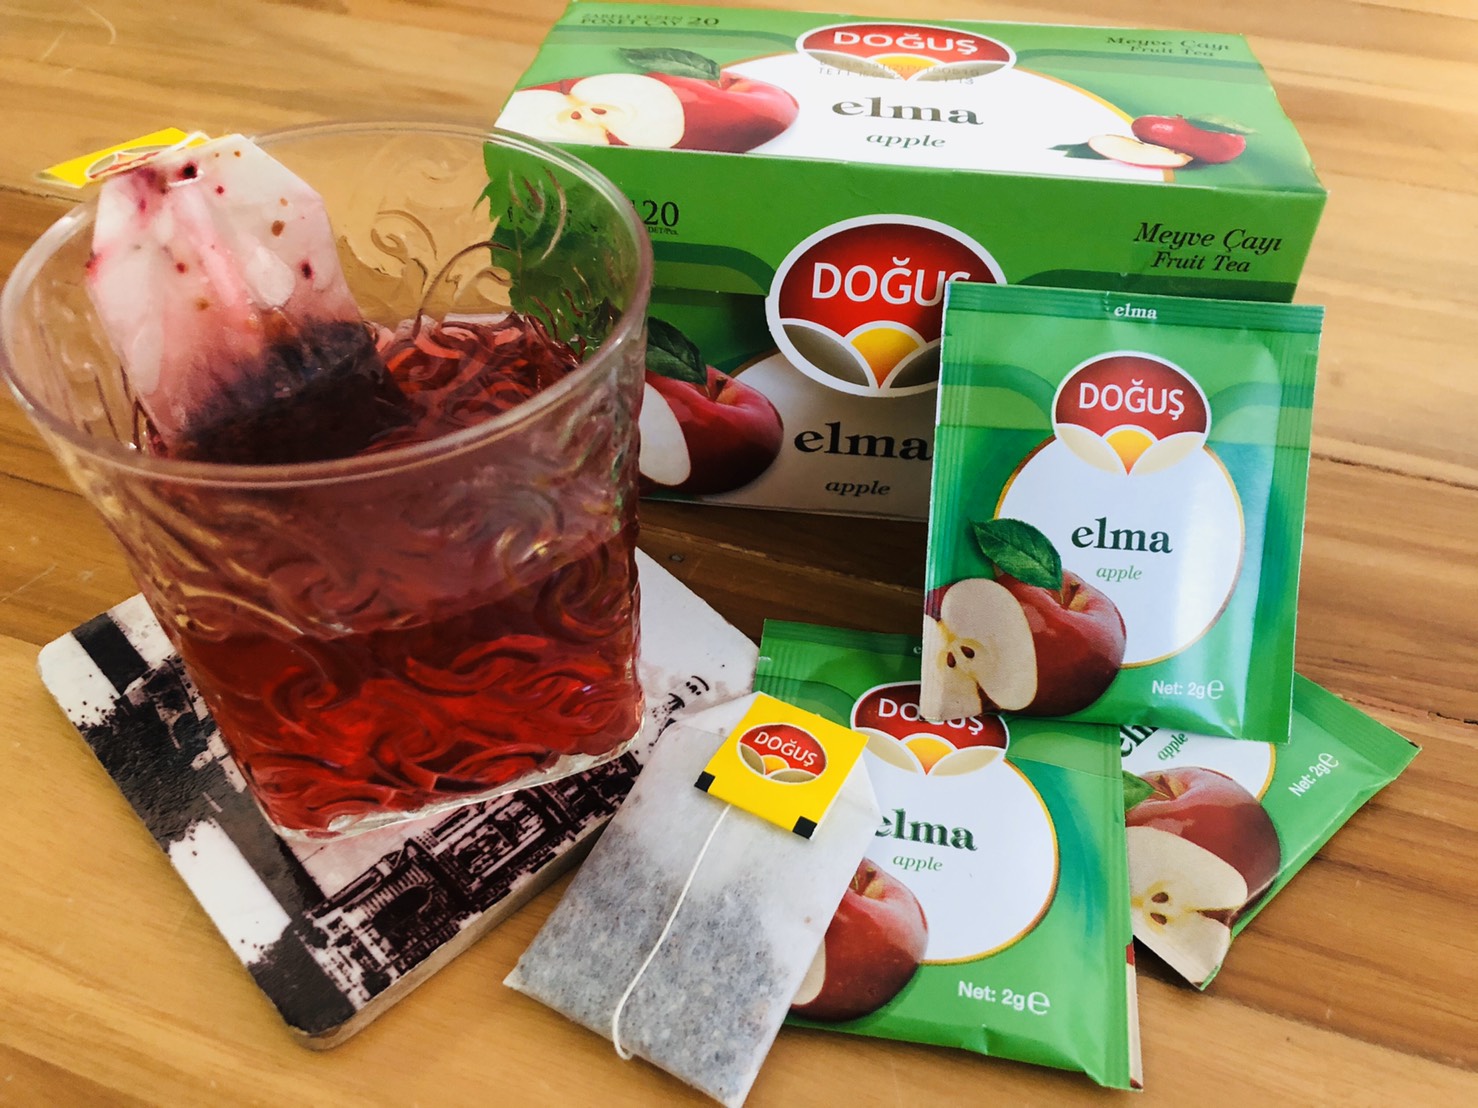 ชาผลไม้ ชาตุรกี ชาแอปเปิ้ล (elma apple) เพื่อสุขภาพ นำเข้าตุรกี Dogus แท้100% พร้อมชง (รับประกันผลิตภัณฑ์)